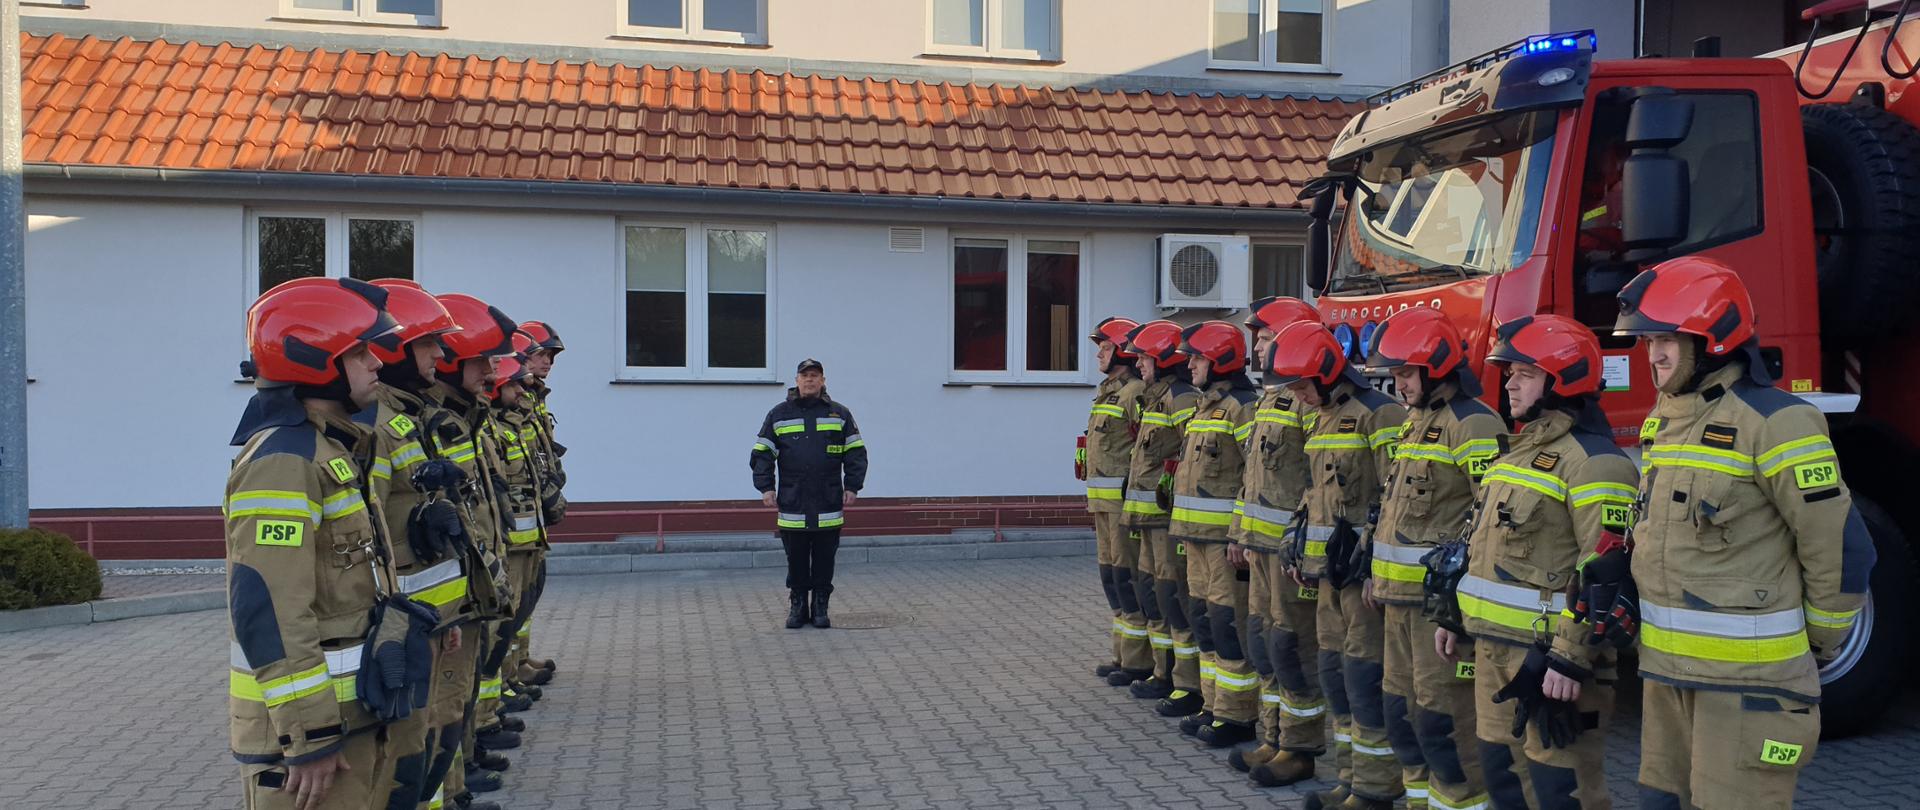 Minuta ciszy dla poległych strażaków Ukraińskich